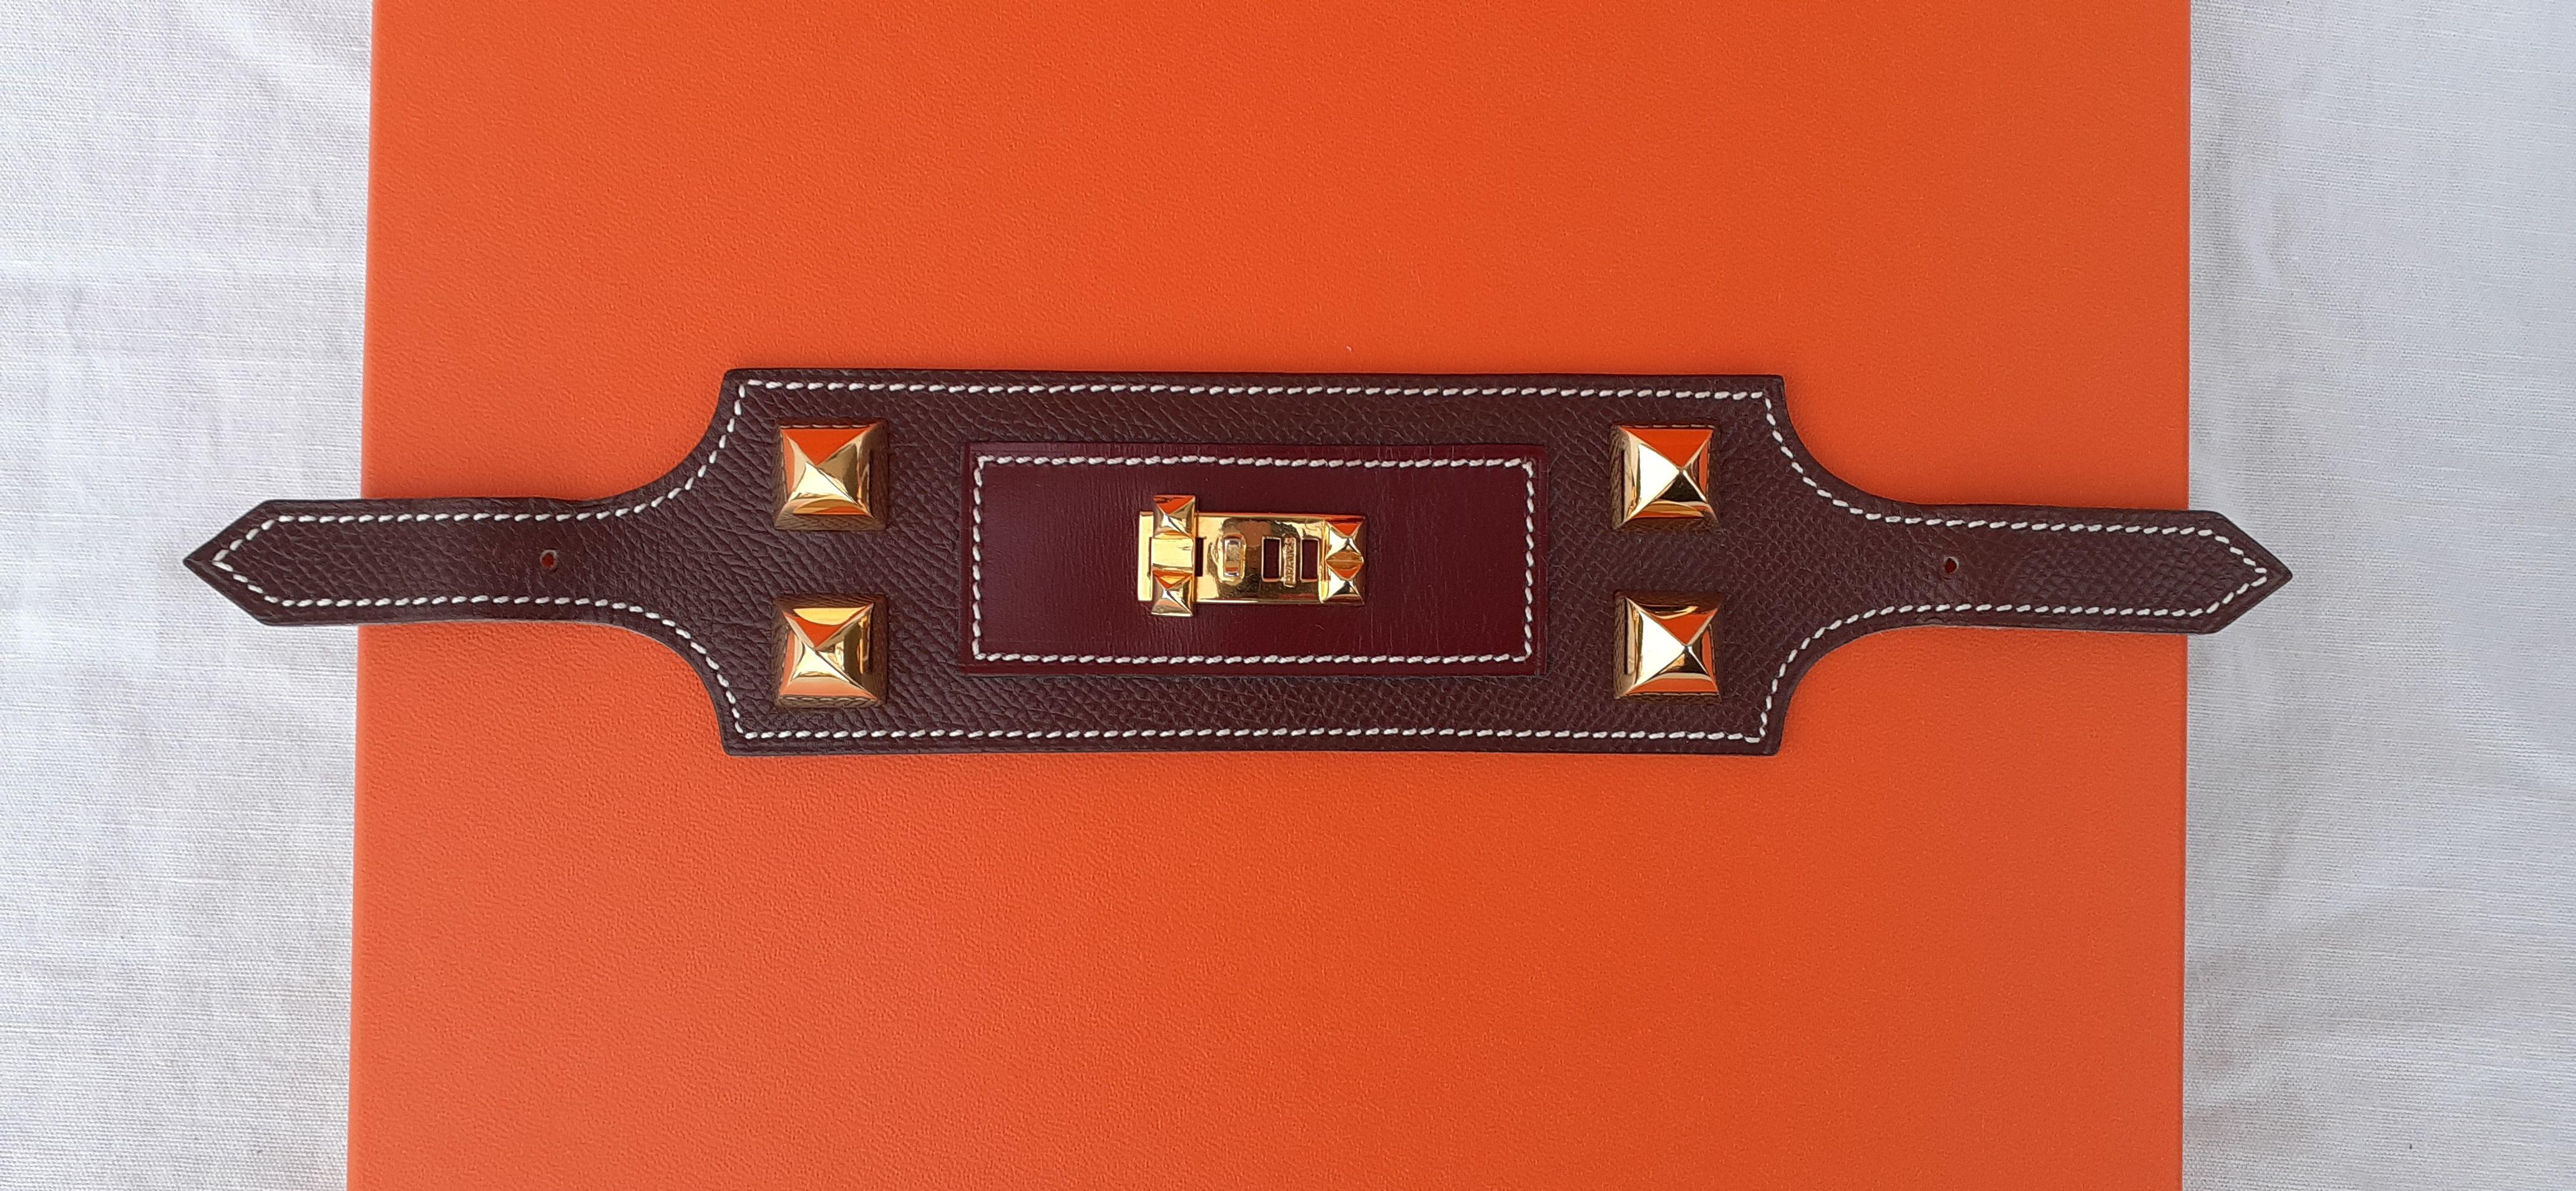 Superbe ornement authentique Herms absolument magnifique

Cette pièce de cuir est conçue pour orner les jupes et les ceintures Herms conçues à cet effet (non incluses dans la vente)

Il y a 4 clous dits « mdor », très emblématiques de la marque,